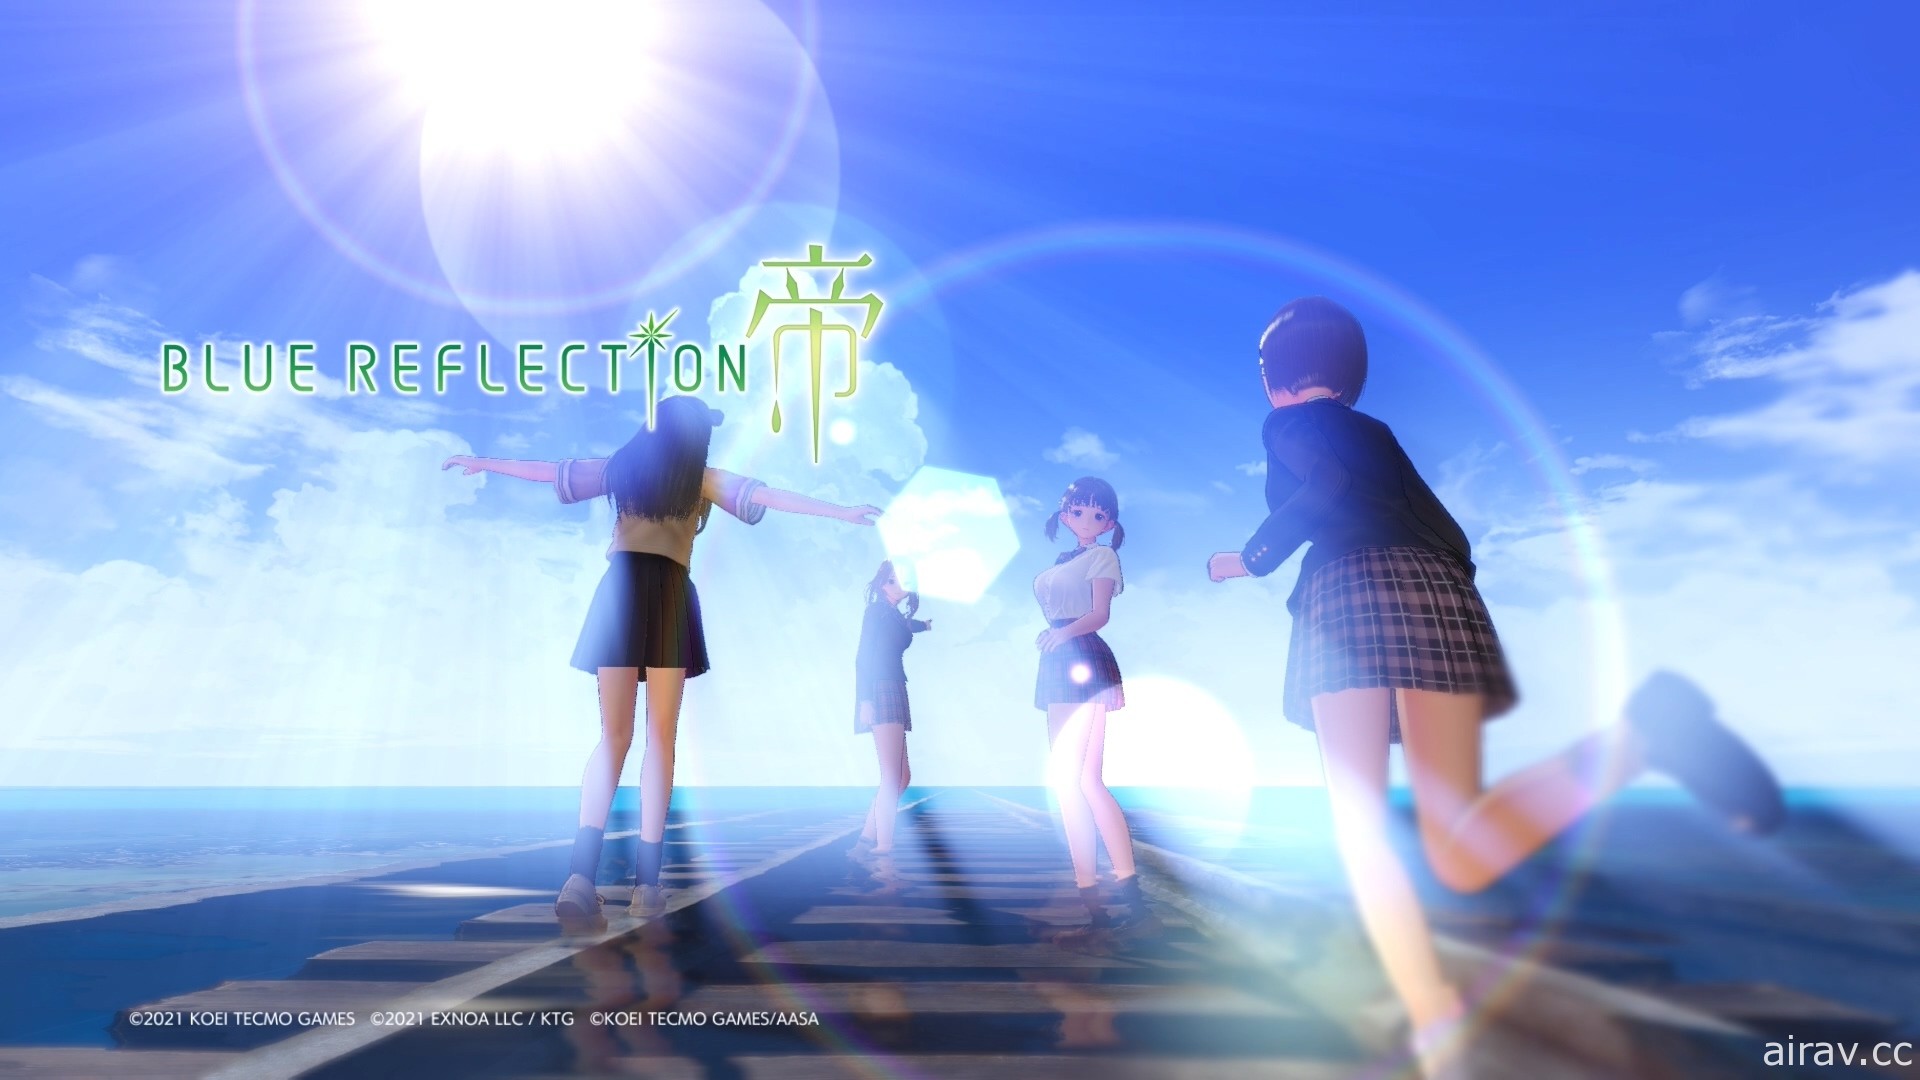 【試玩】香香美少女 RPG《Blue Reflection: 帝》初期遊玩報導 體驗版同步上架